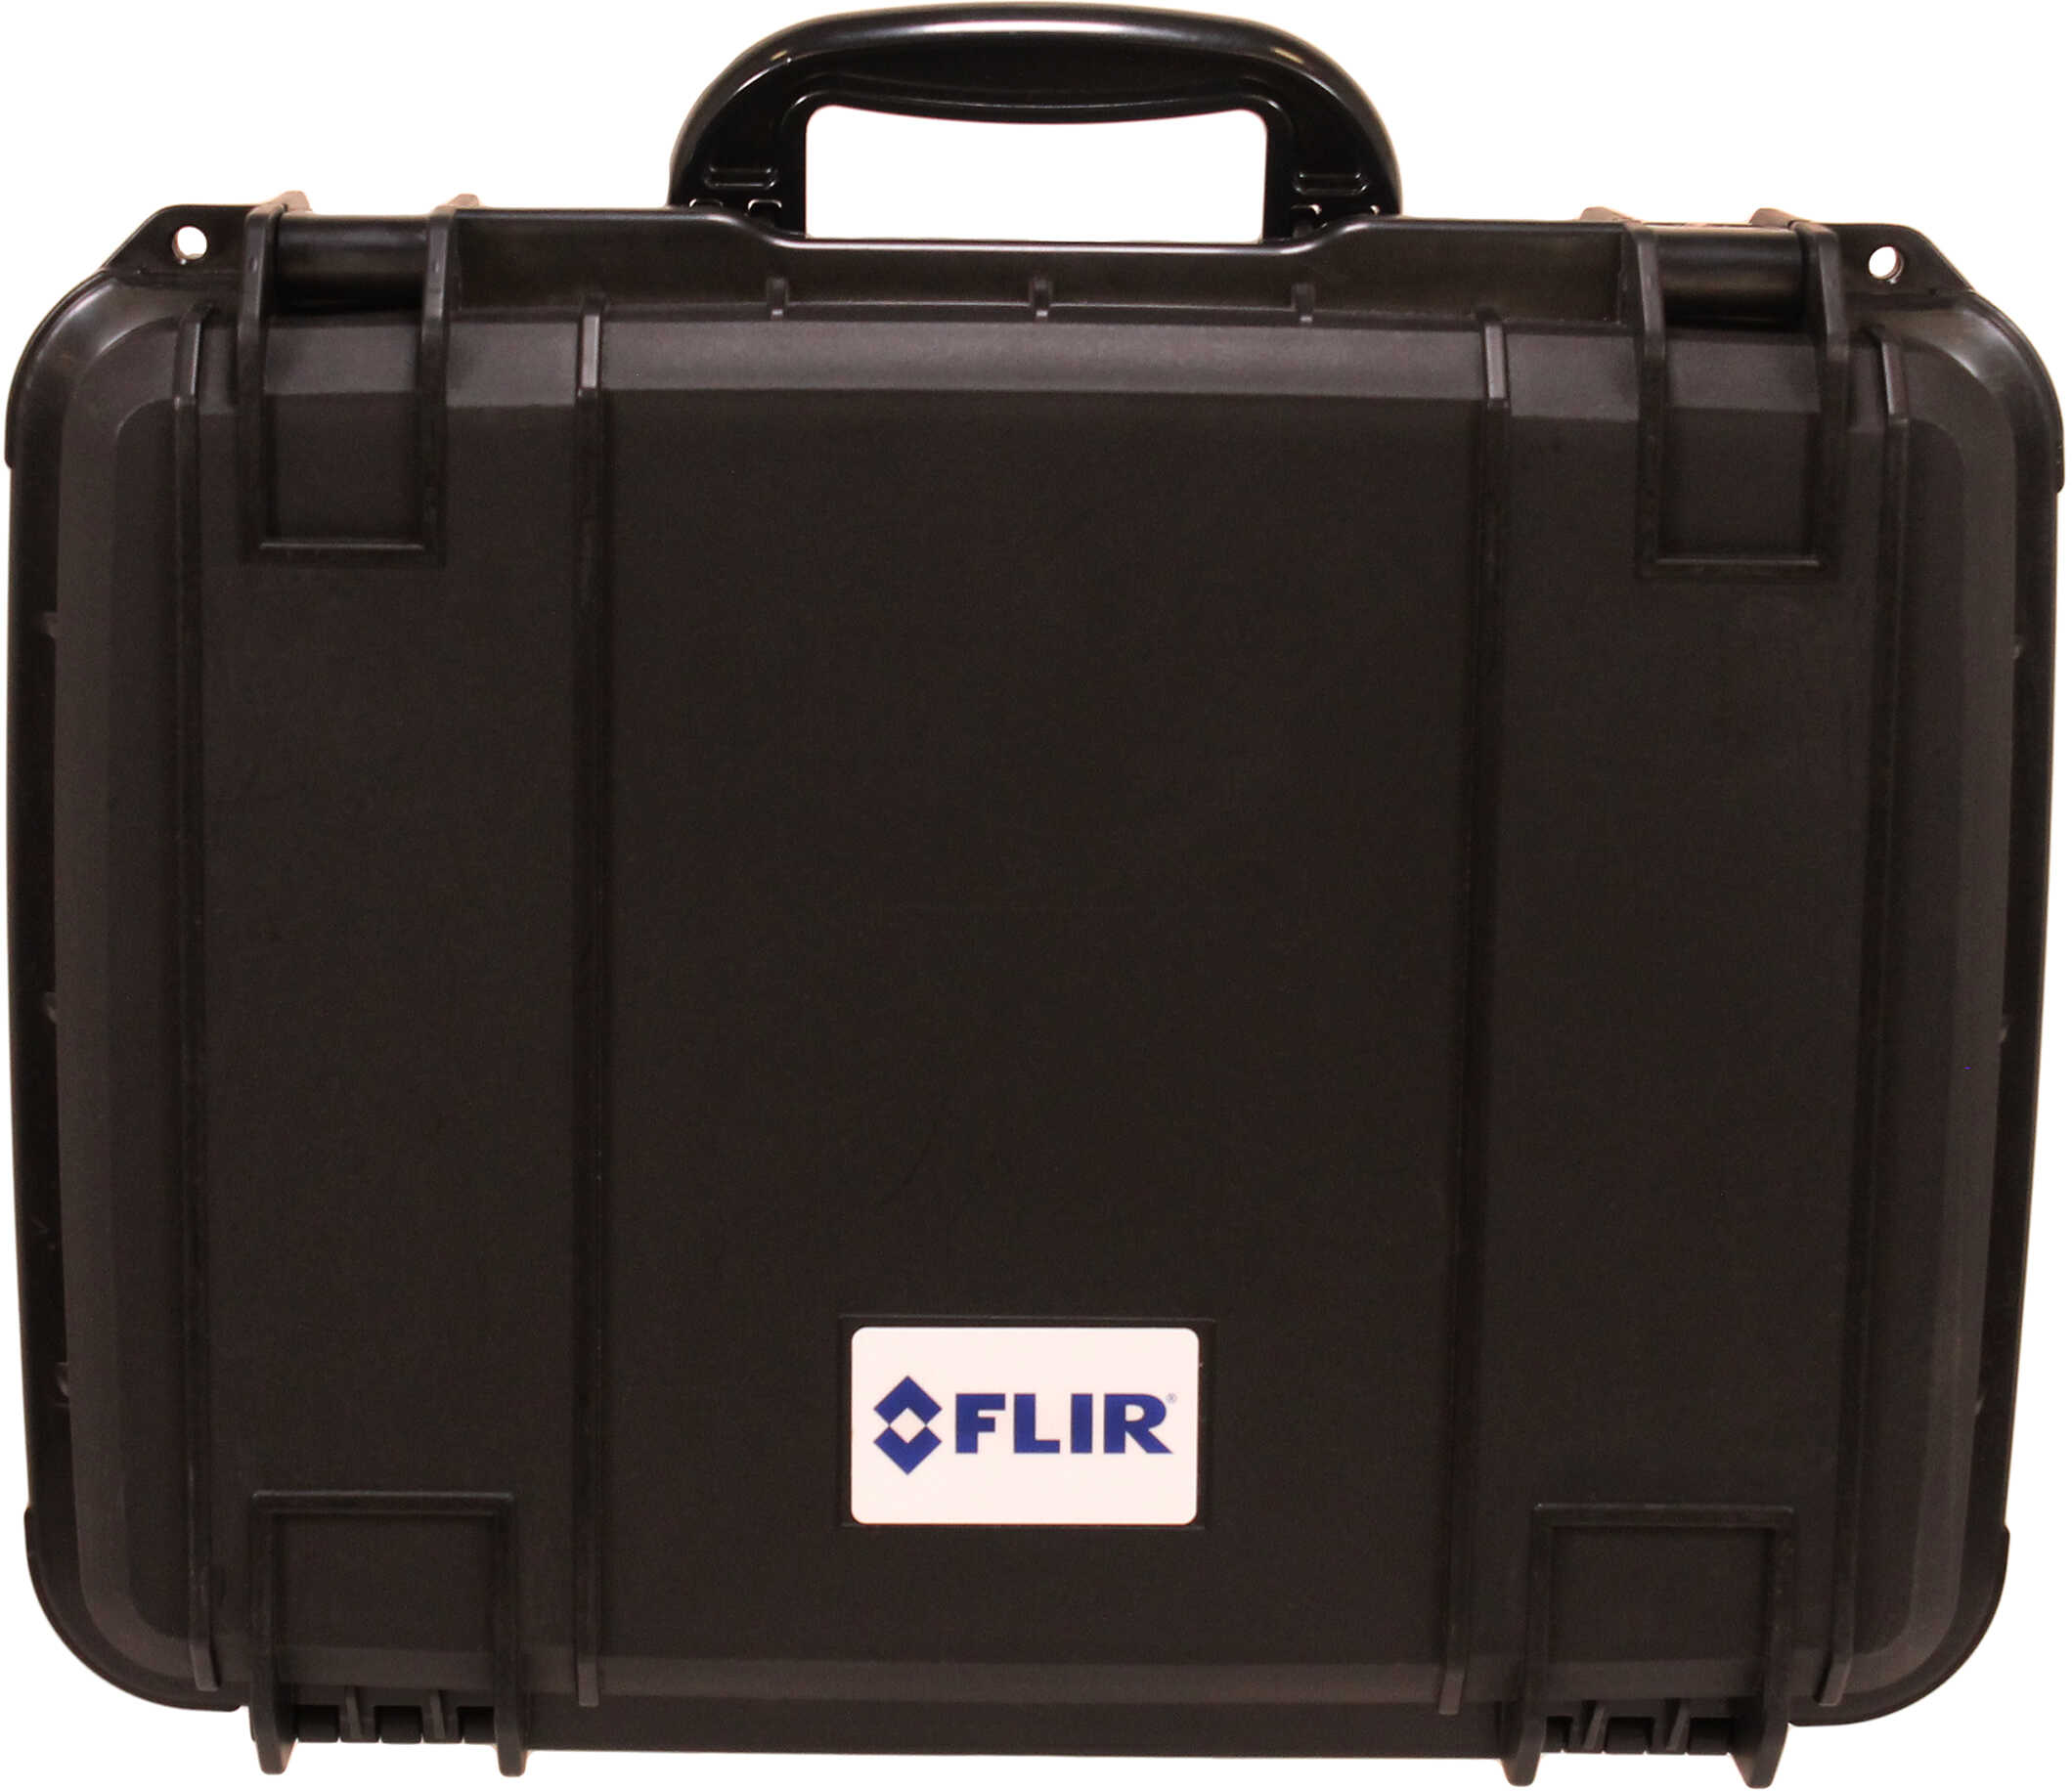 FLIR Hard Carrying Case, Black Md: 4125400